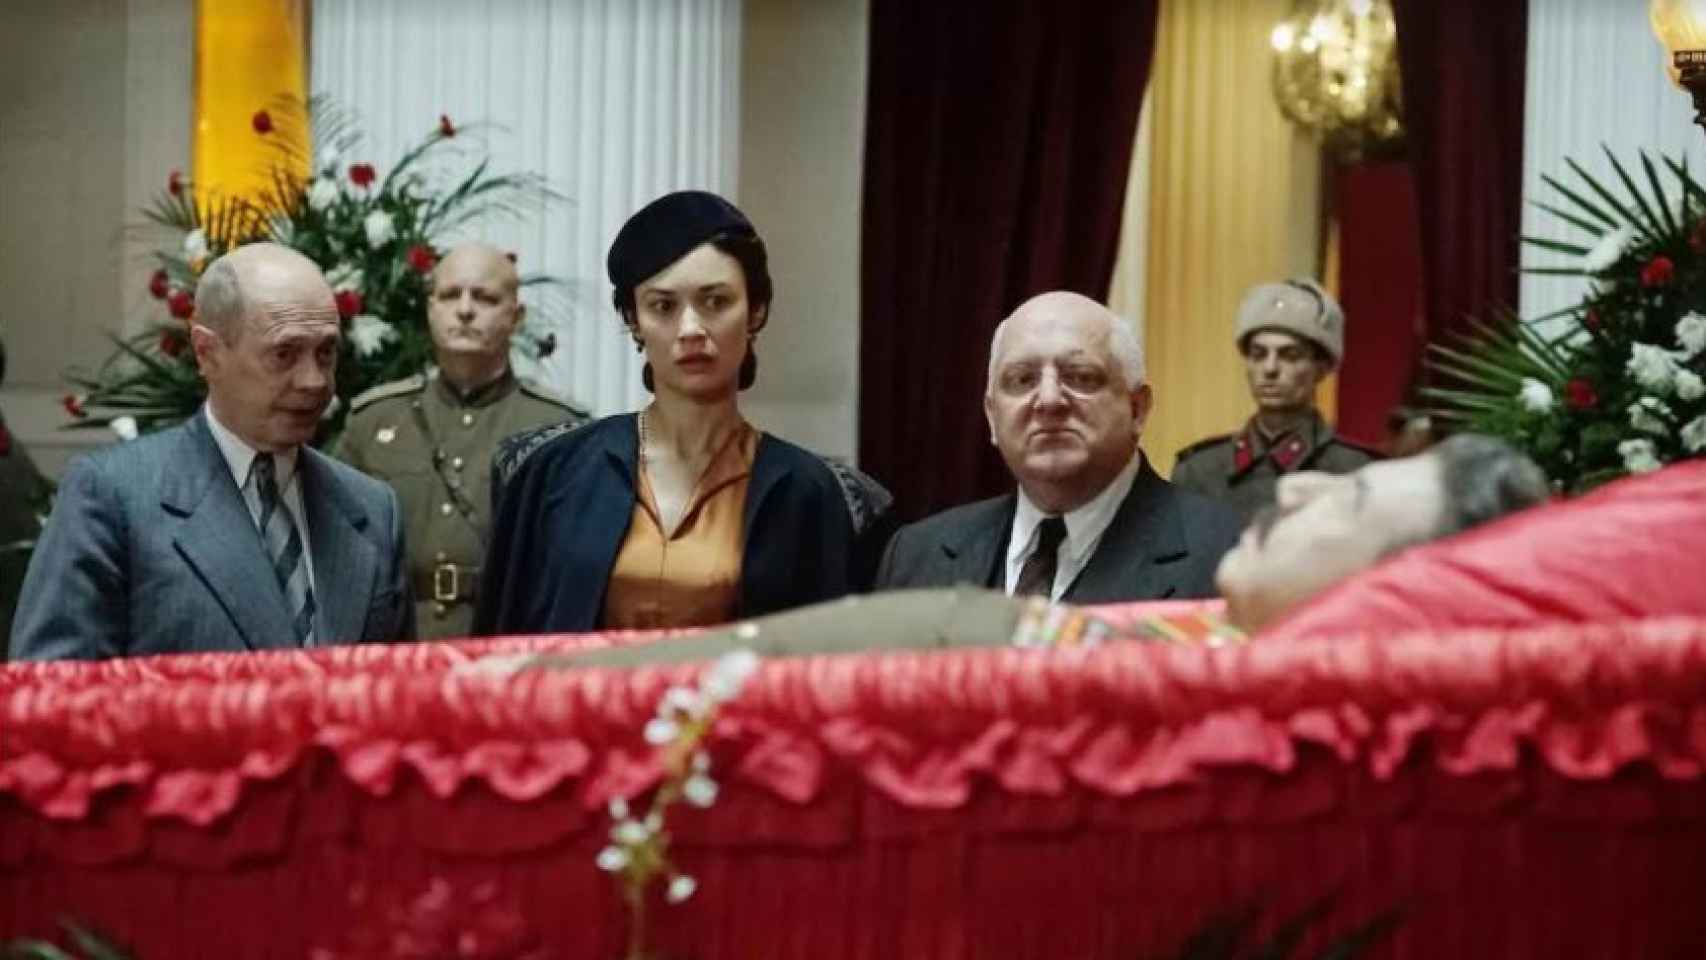 Fotograma de 'La muerte de Stalin' en el que Kruschev (izquierda) y Beria (derecha) están ante el féretro de Stalin.